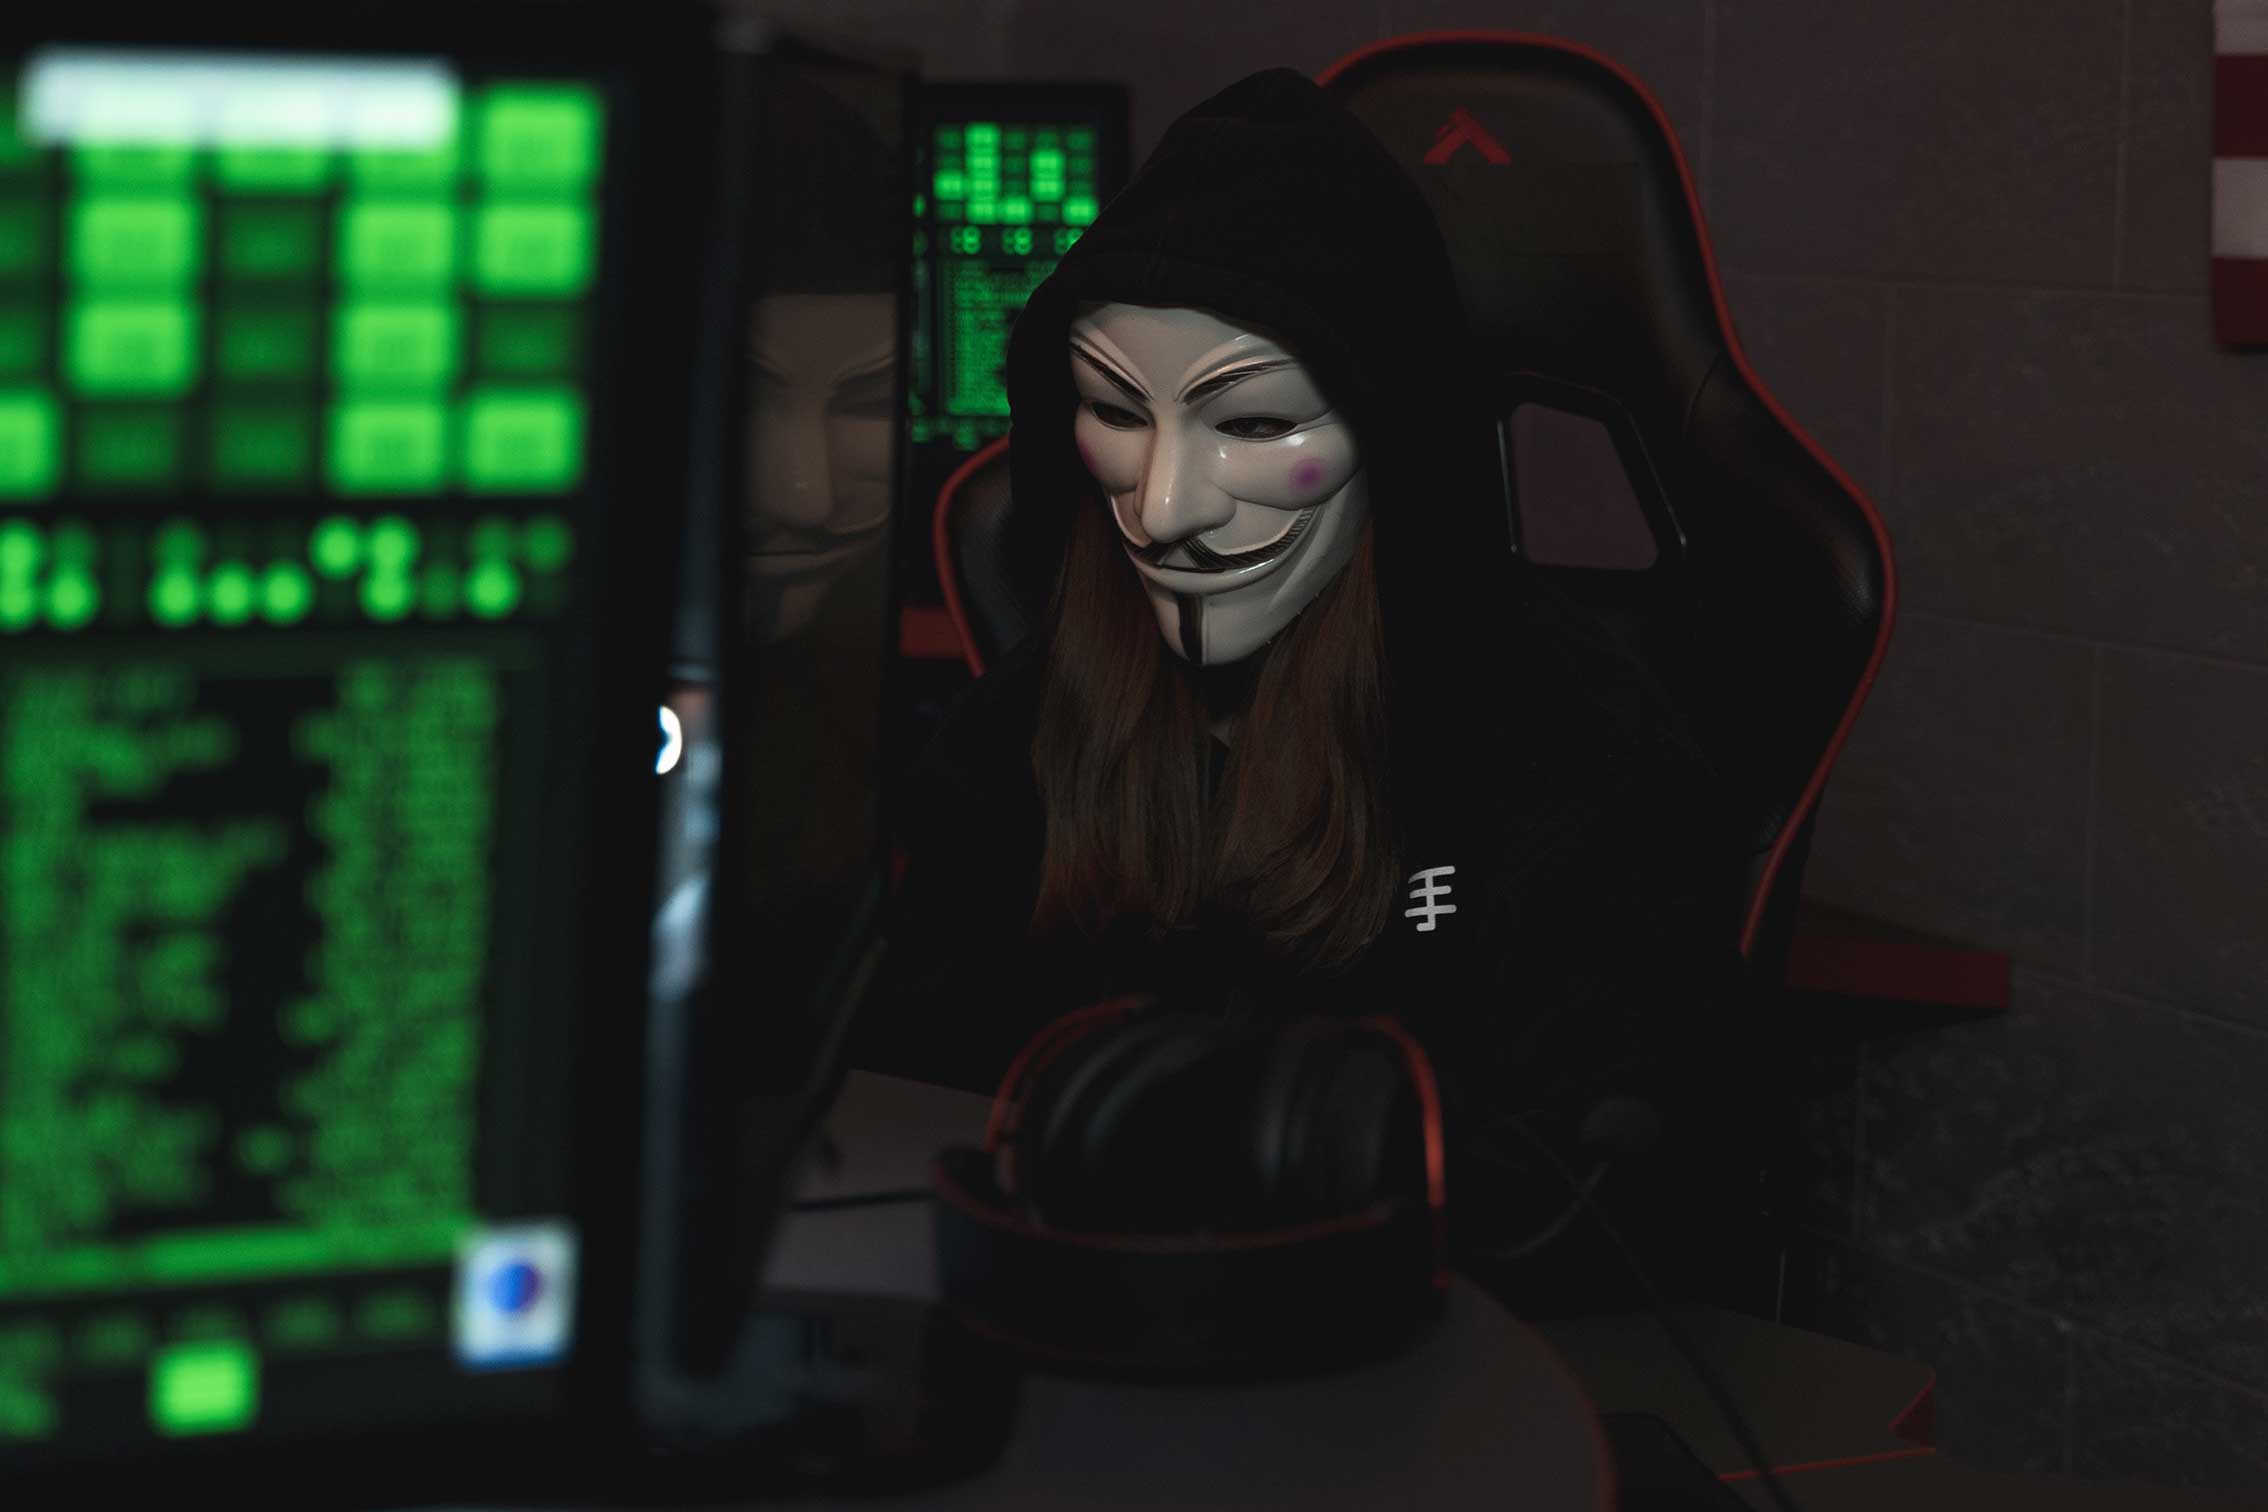 zu sehen ist ein klischeehafter Hacker mit Anonymous-Maske in einem dunklen Raum mit großen Monitoren. Das Thema ist Doxing. Bild: Pexels/Tima Miroshnichenko